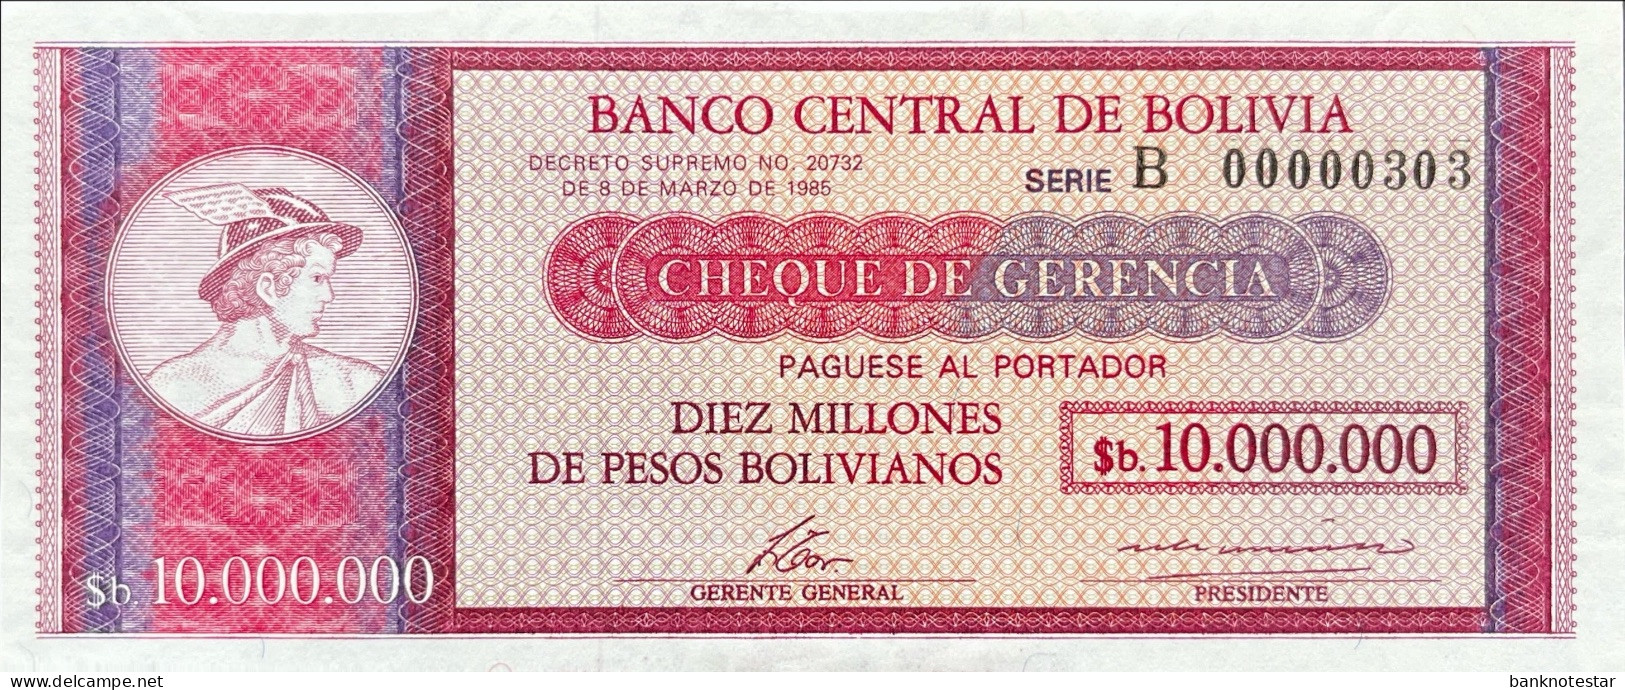 Bolivia 10.000.000 Pesos Bolivianos, P-192B (D.1985) - B0000303 - UNC - RARE - Bolivia